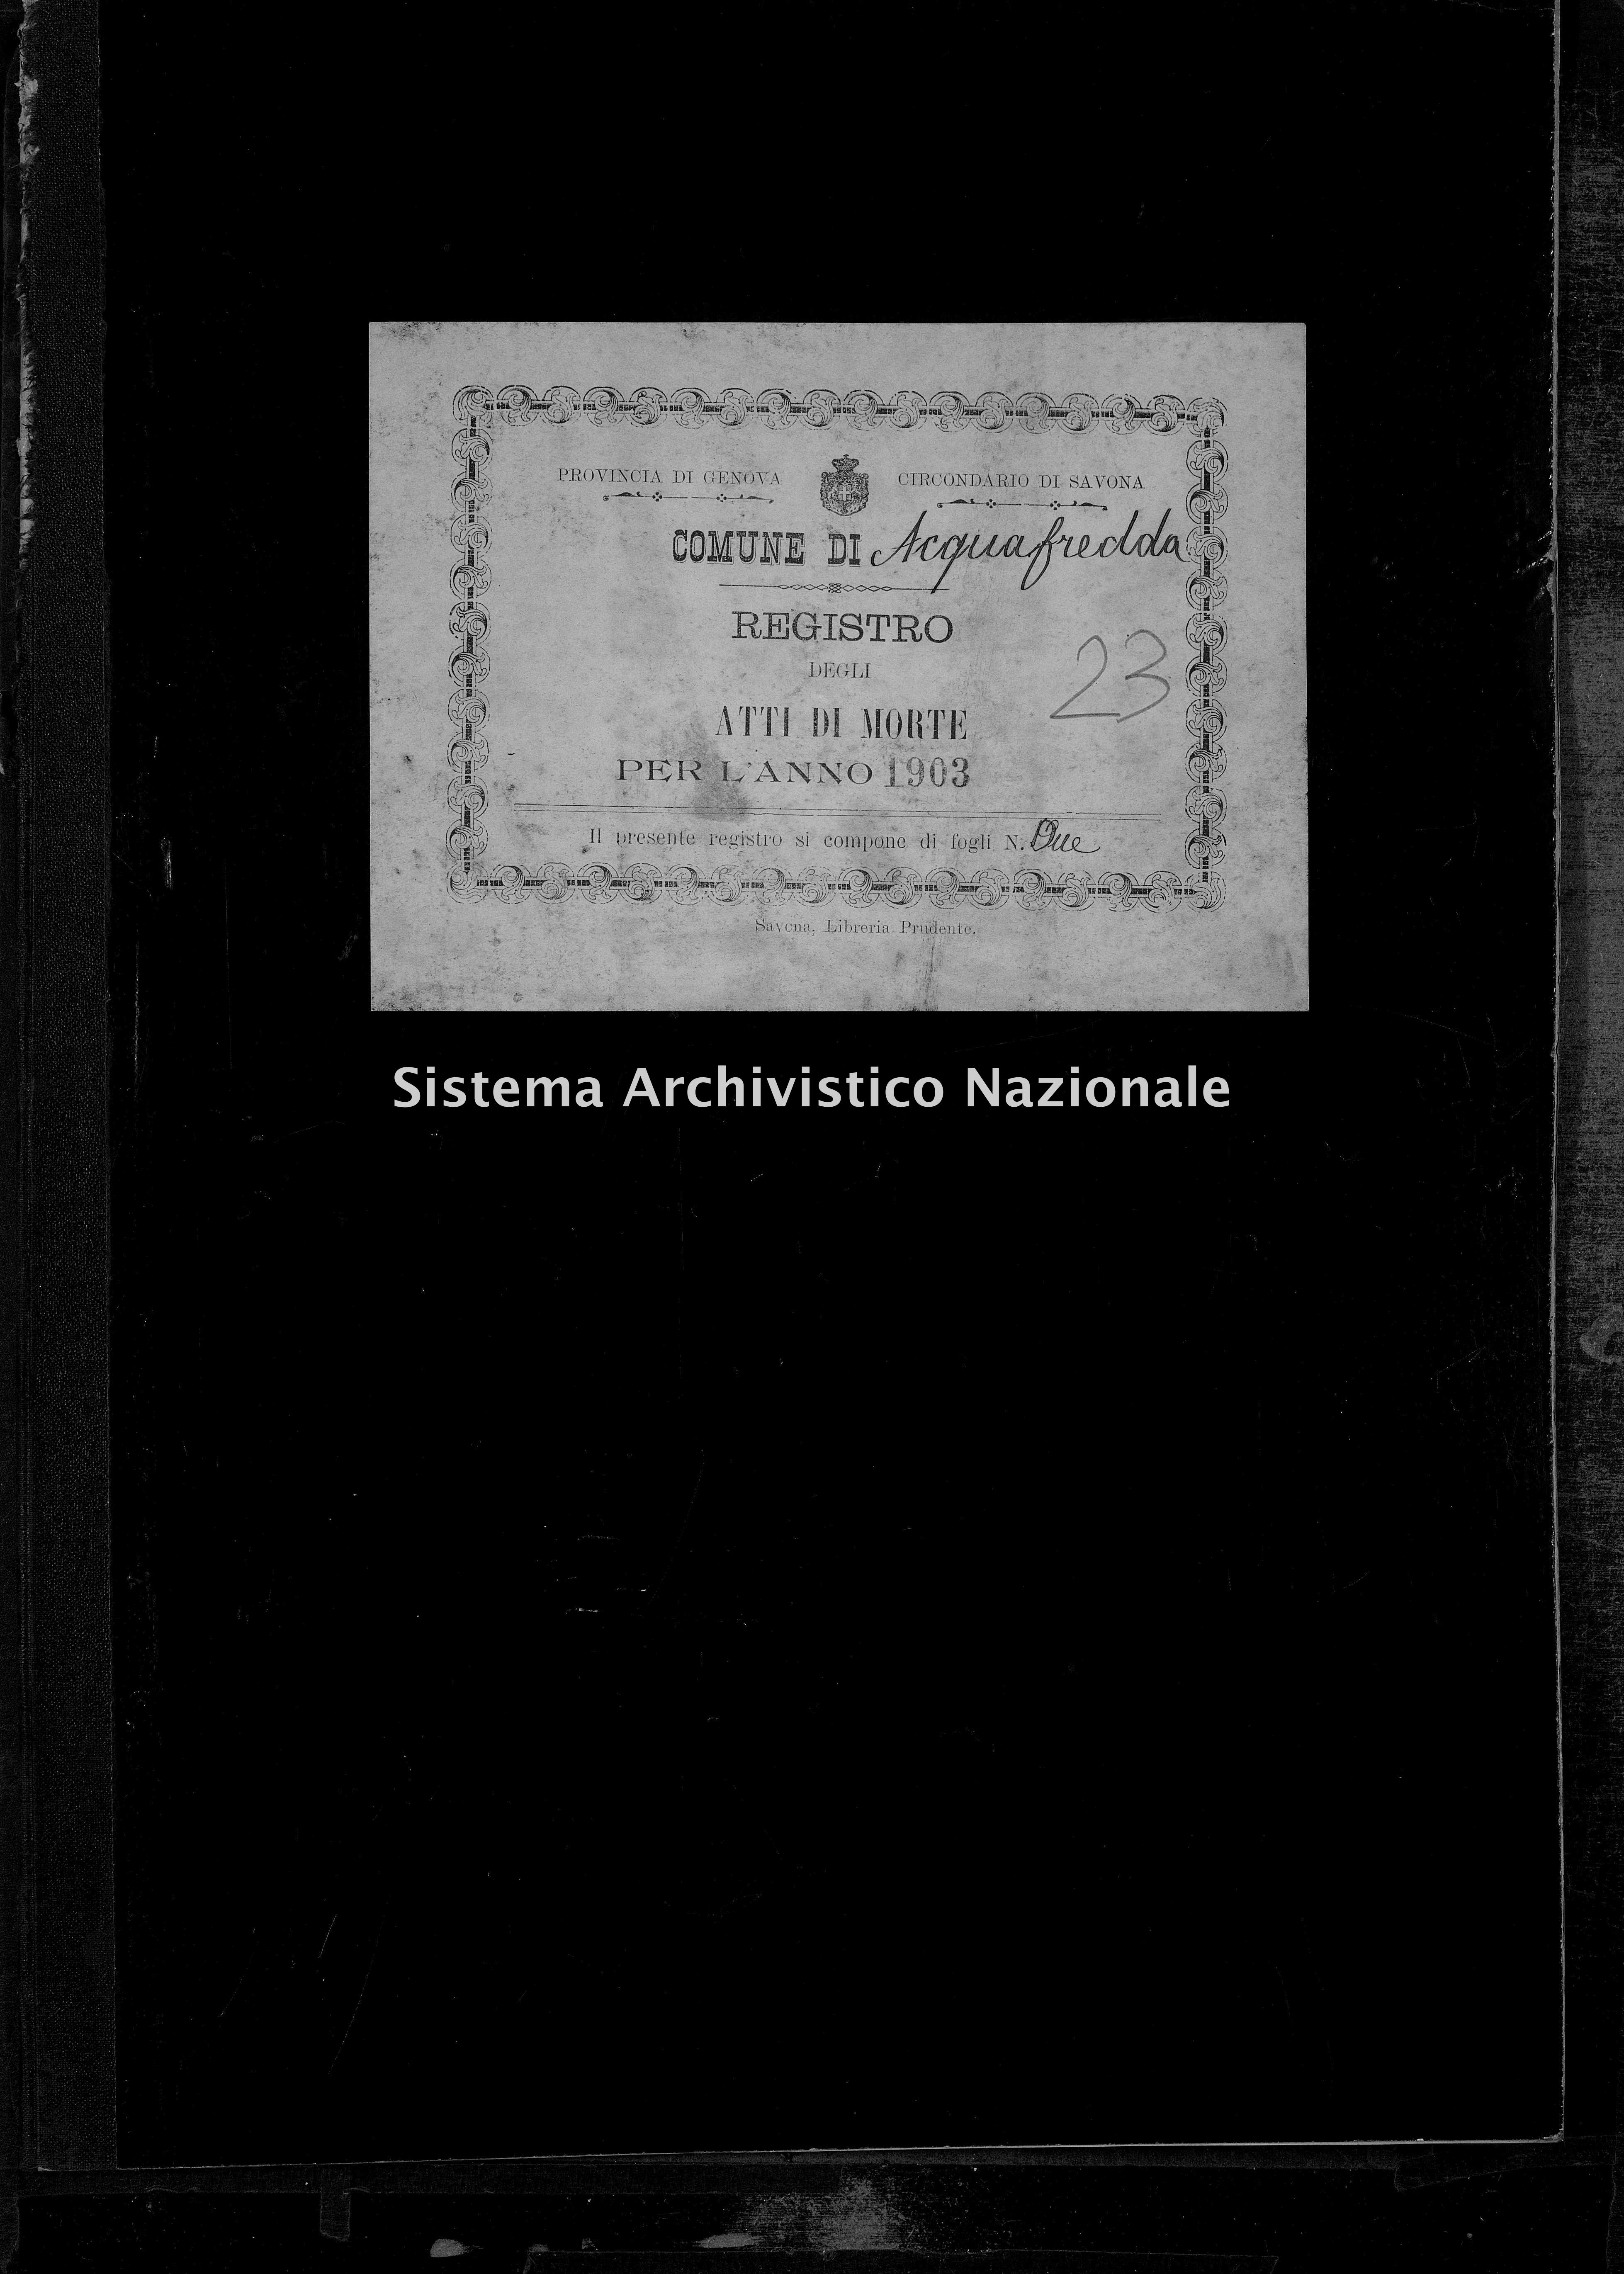 Archivio di stato di Savona - Stato civile - Acquafredda - Morti - 1903 - 23 -